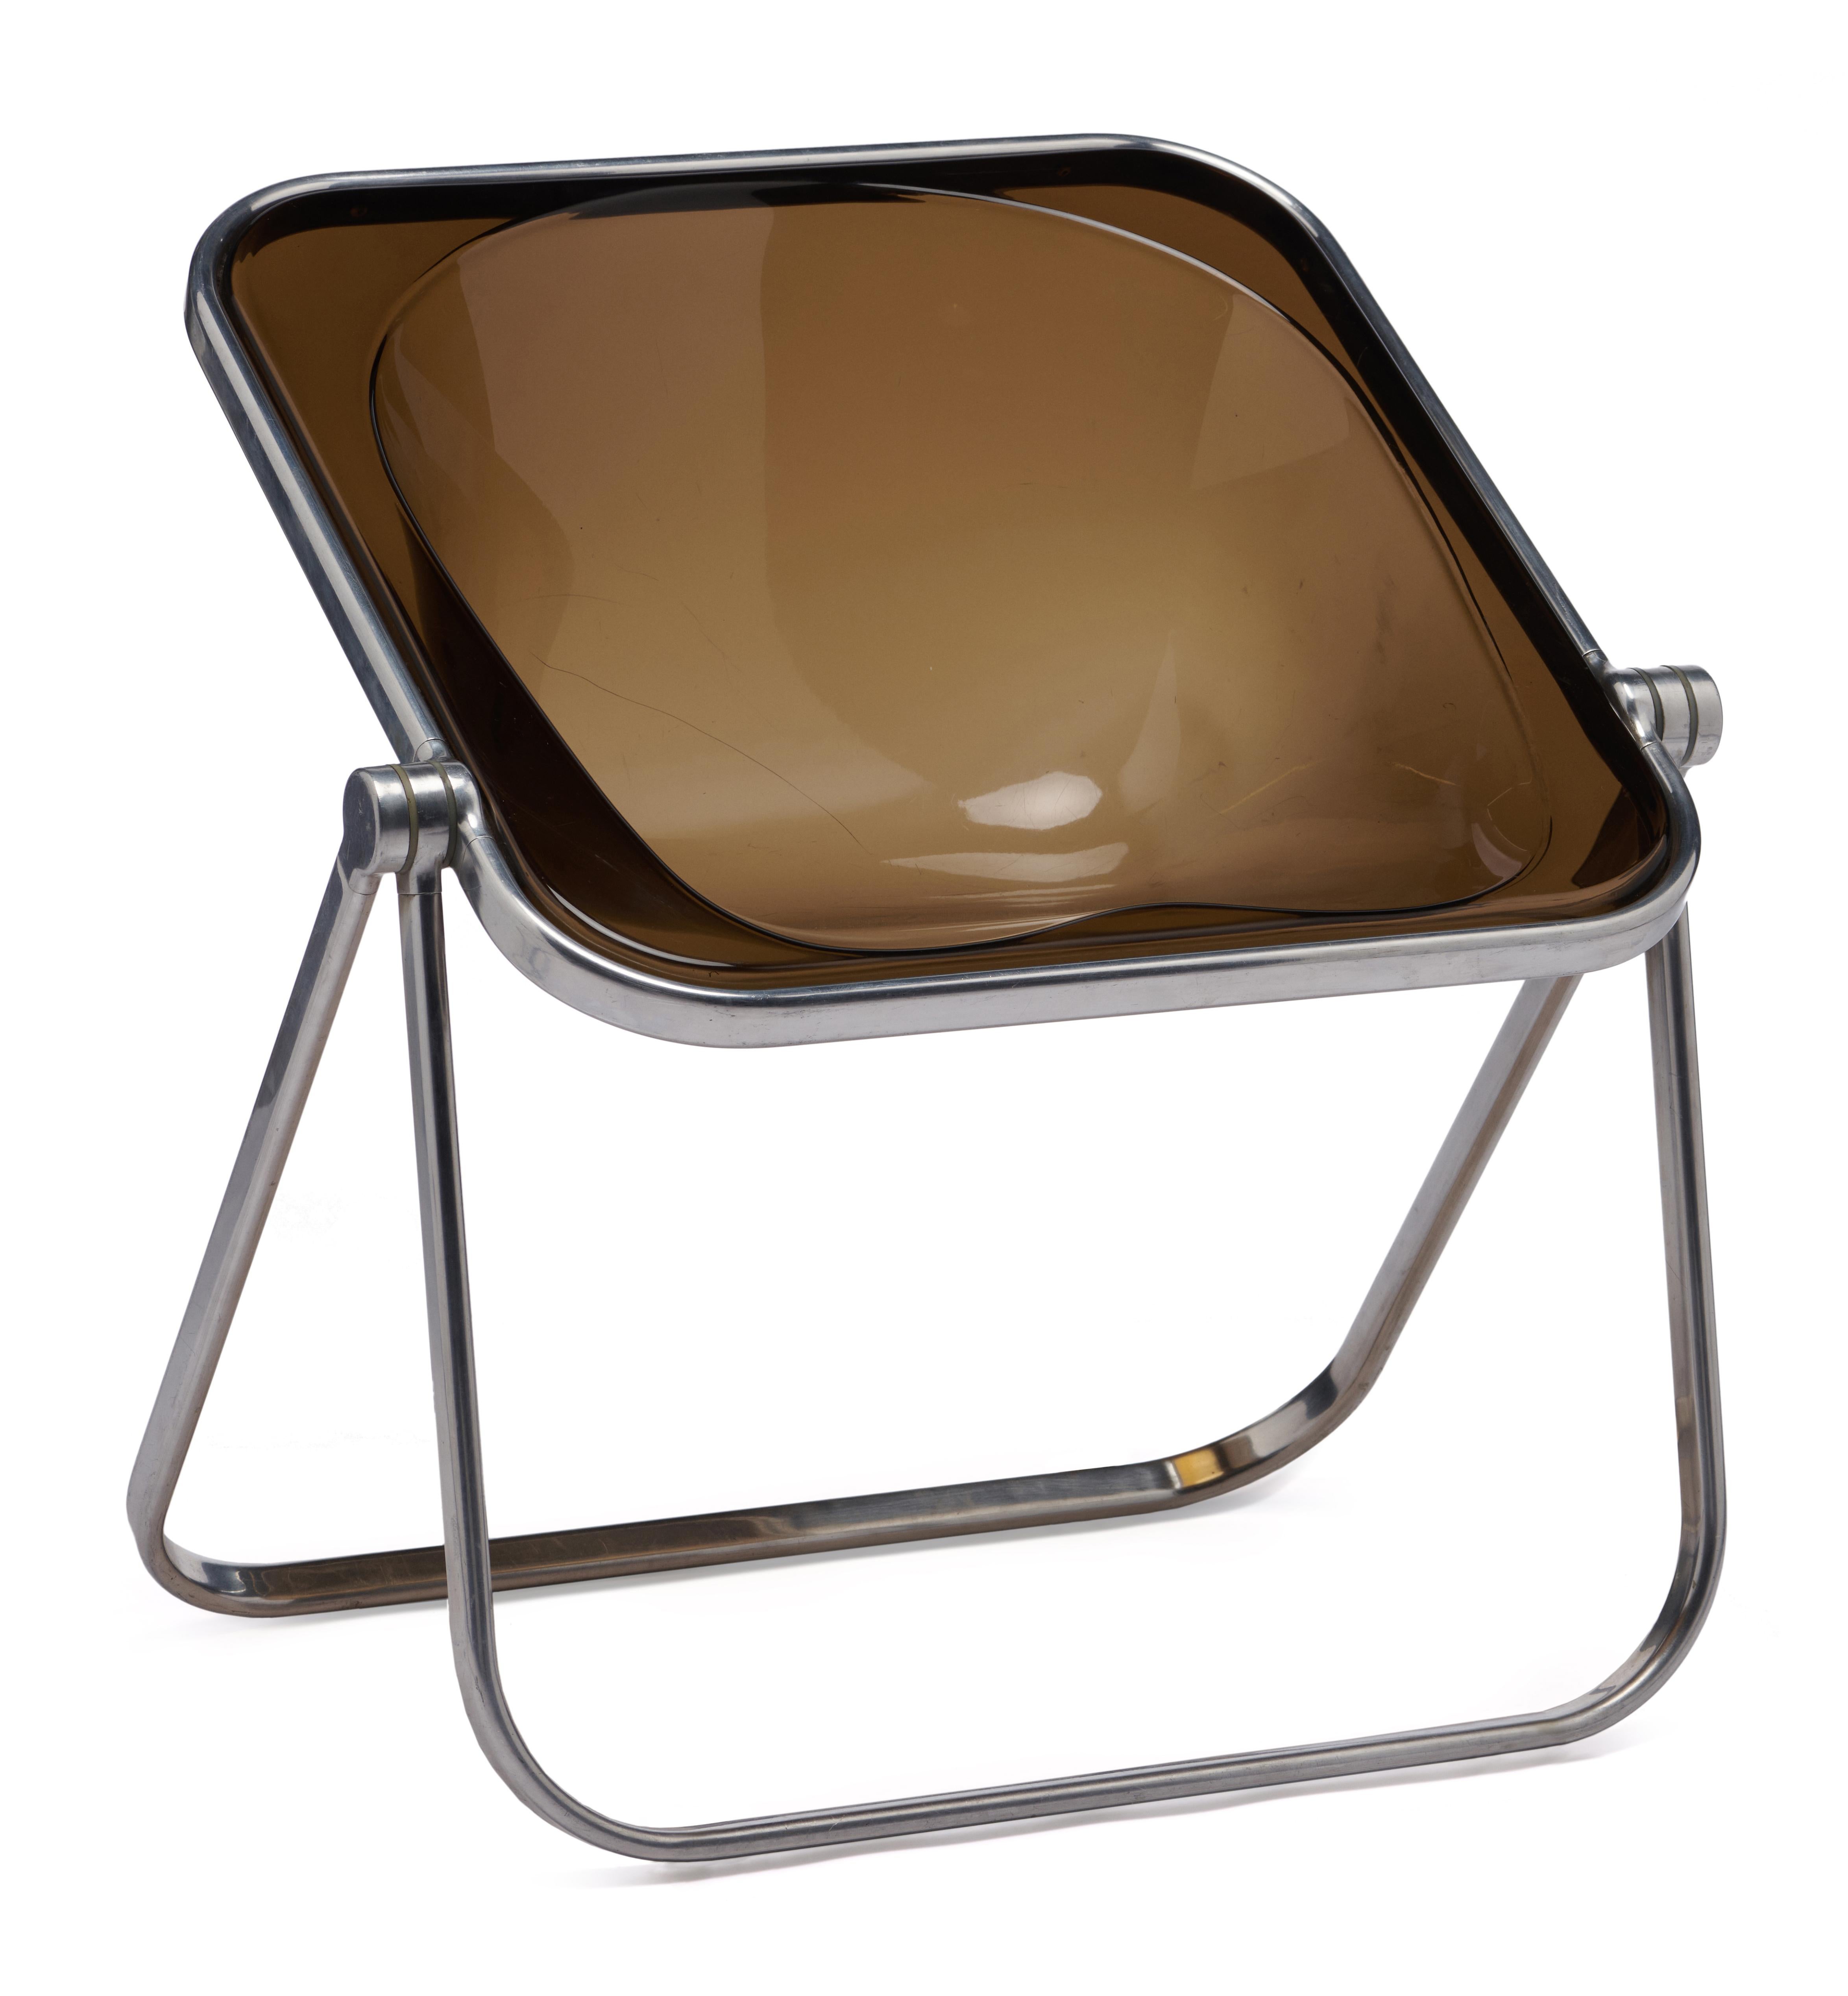 Conçu en 1970 par Giancarlo Piretti, Plona est un fauteuil pliant et empilable. La structure tubulaire solide est en alliage d'aluminium inoxydable poli, avec des charnières en alliage léger moulé sous pression. 

Bon état vintage. Quelques rayures